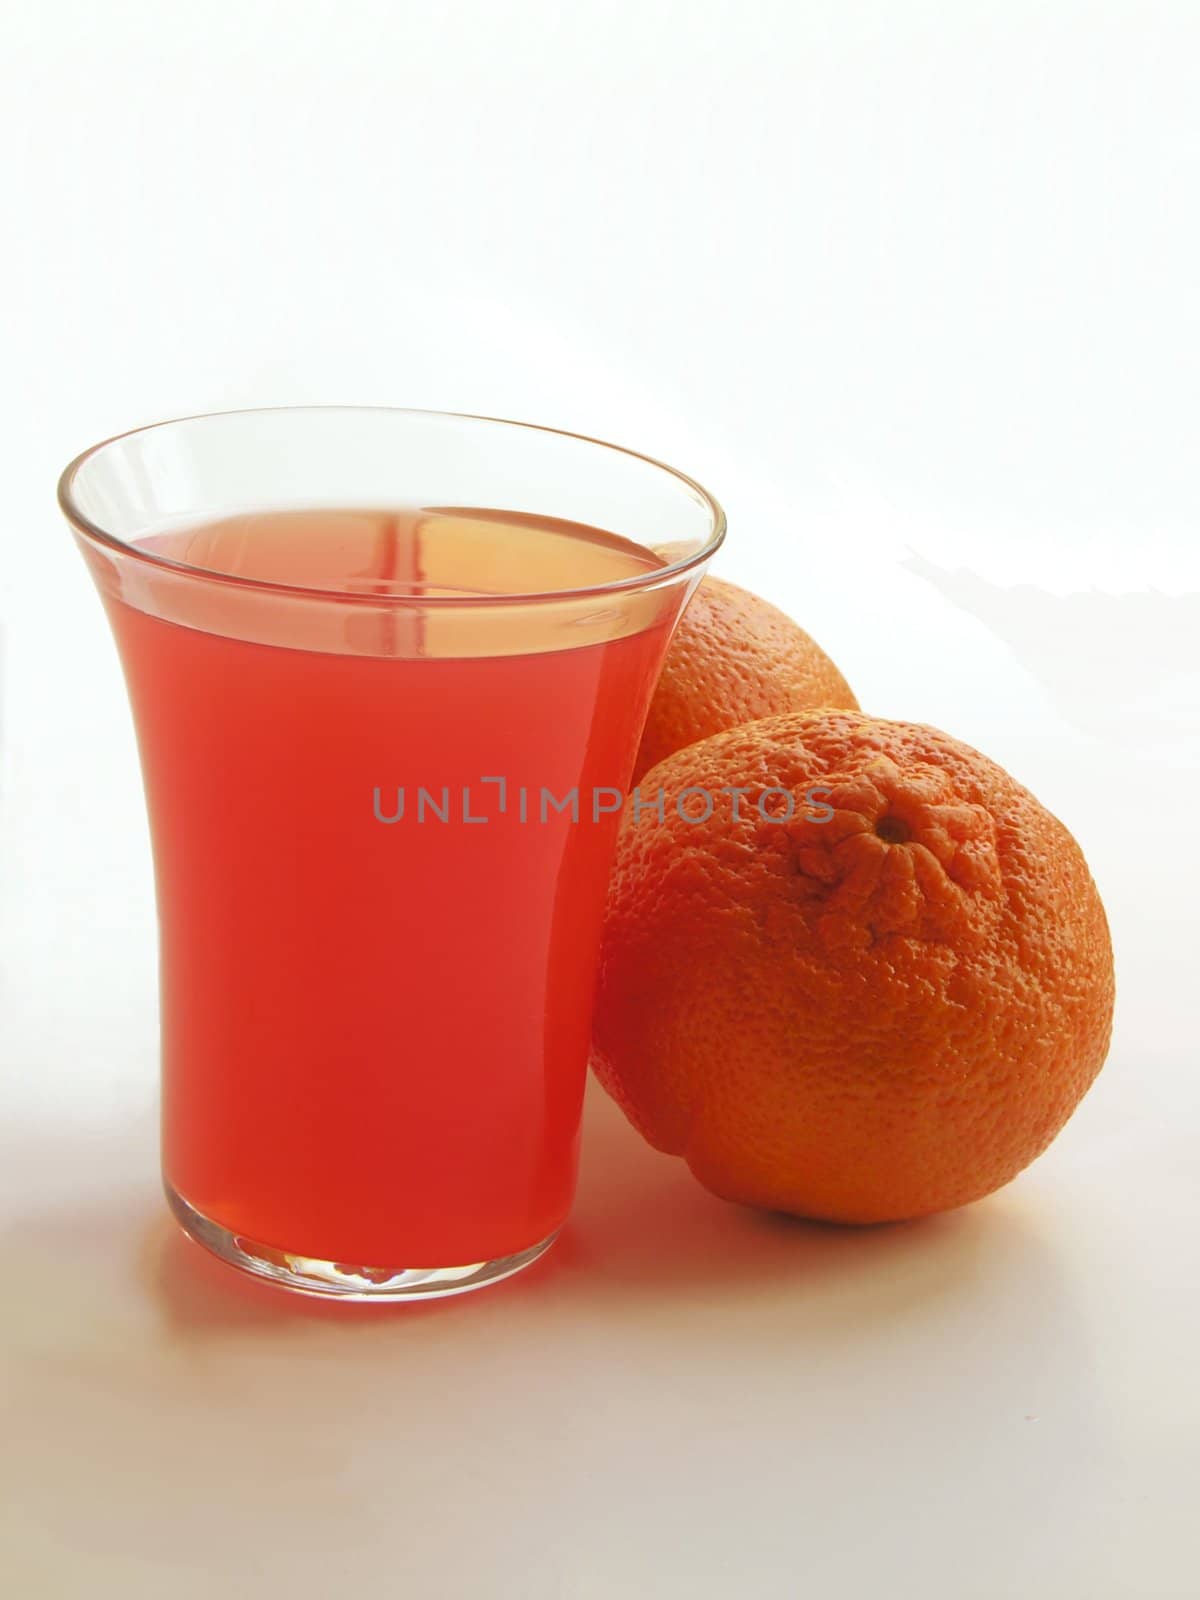 orange juice and citrus fruits